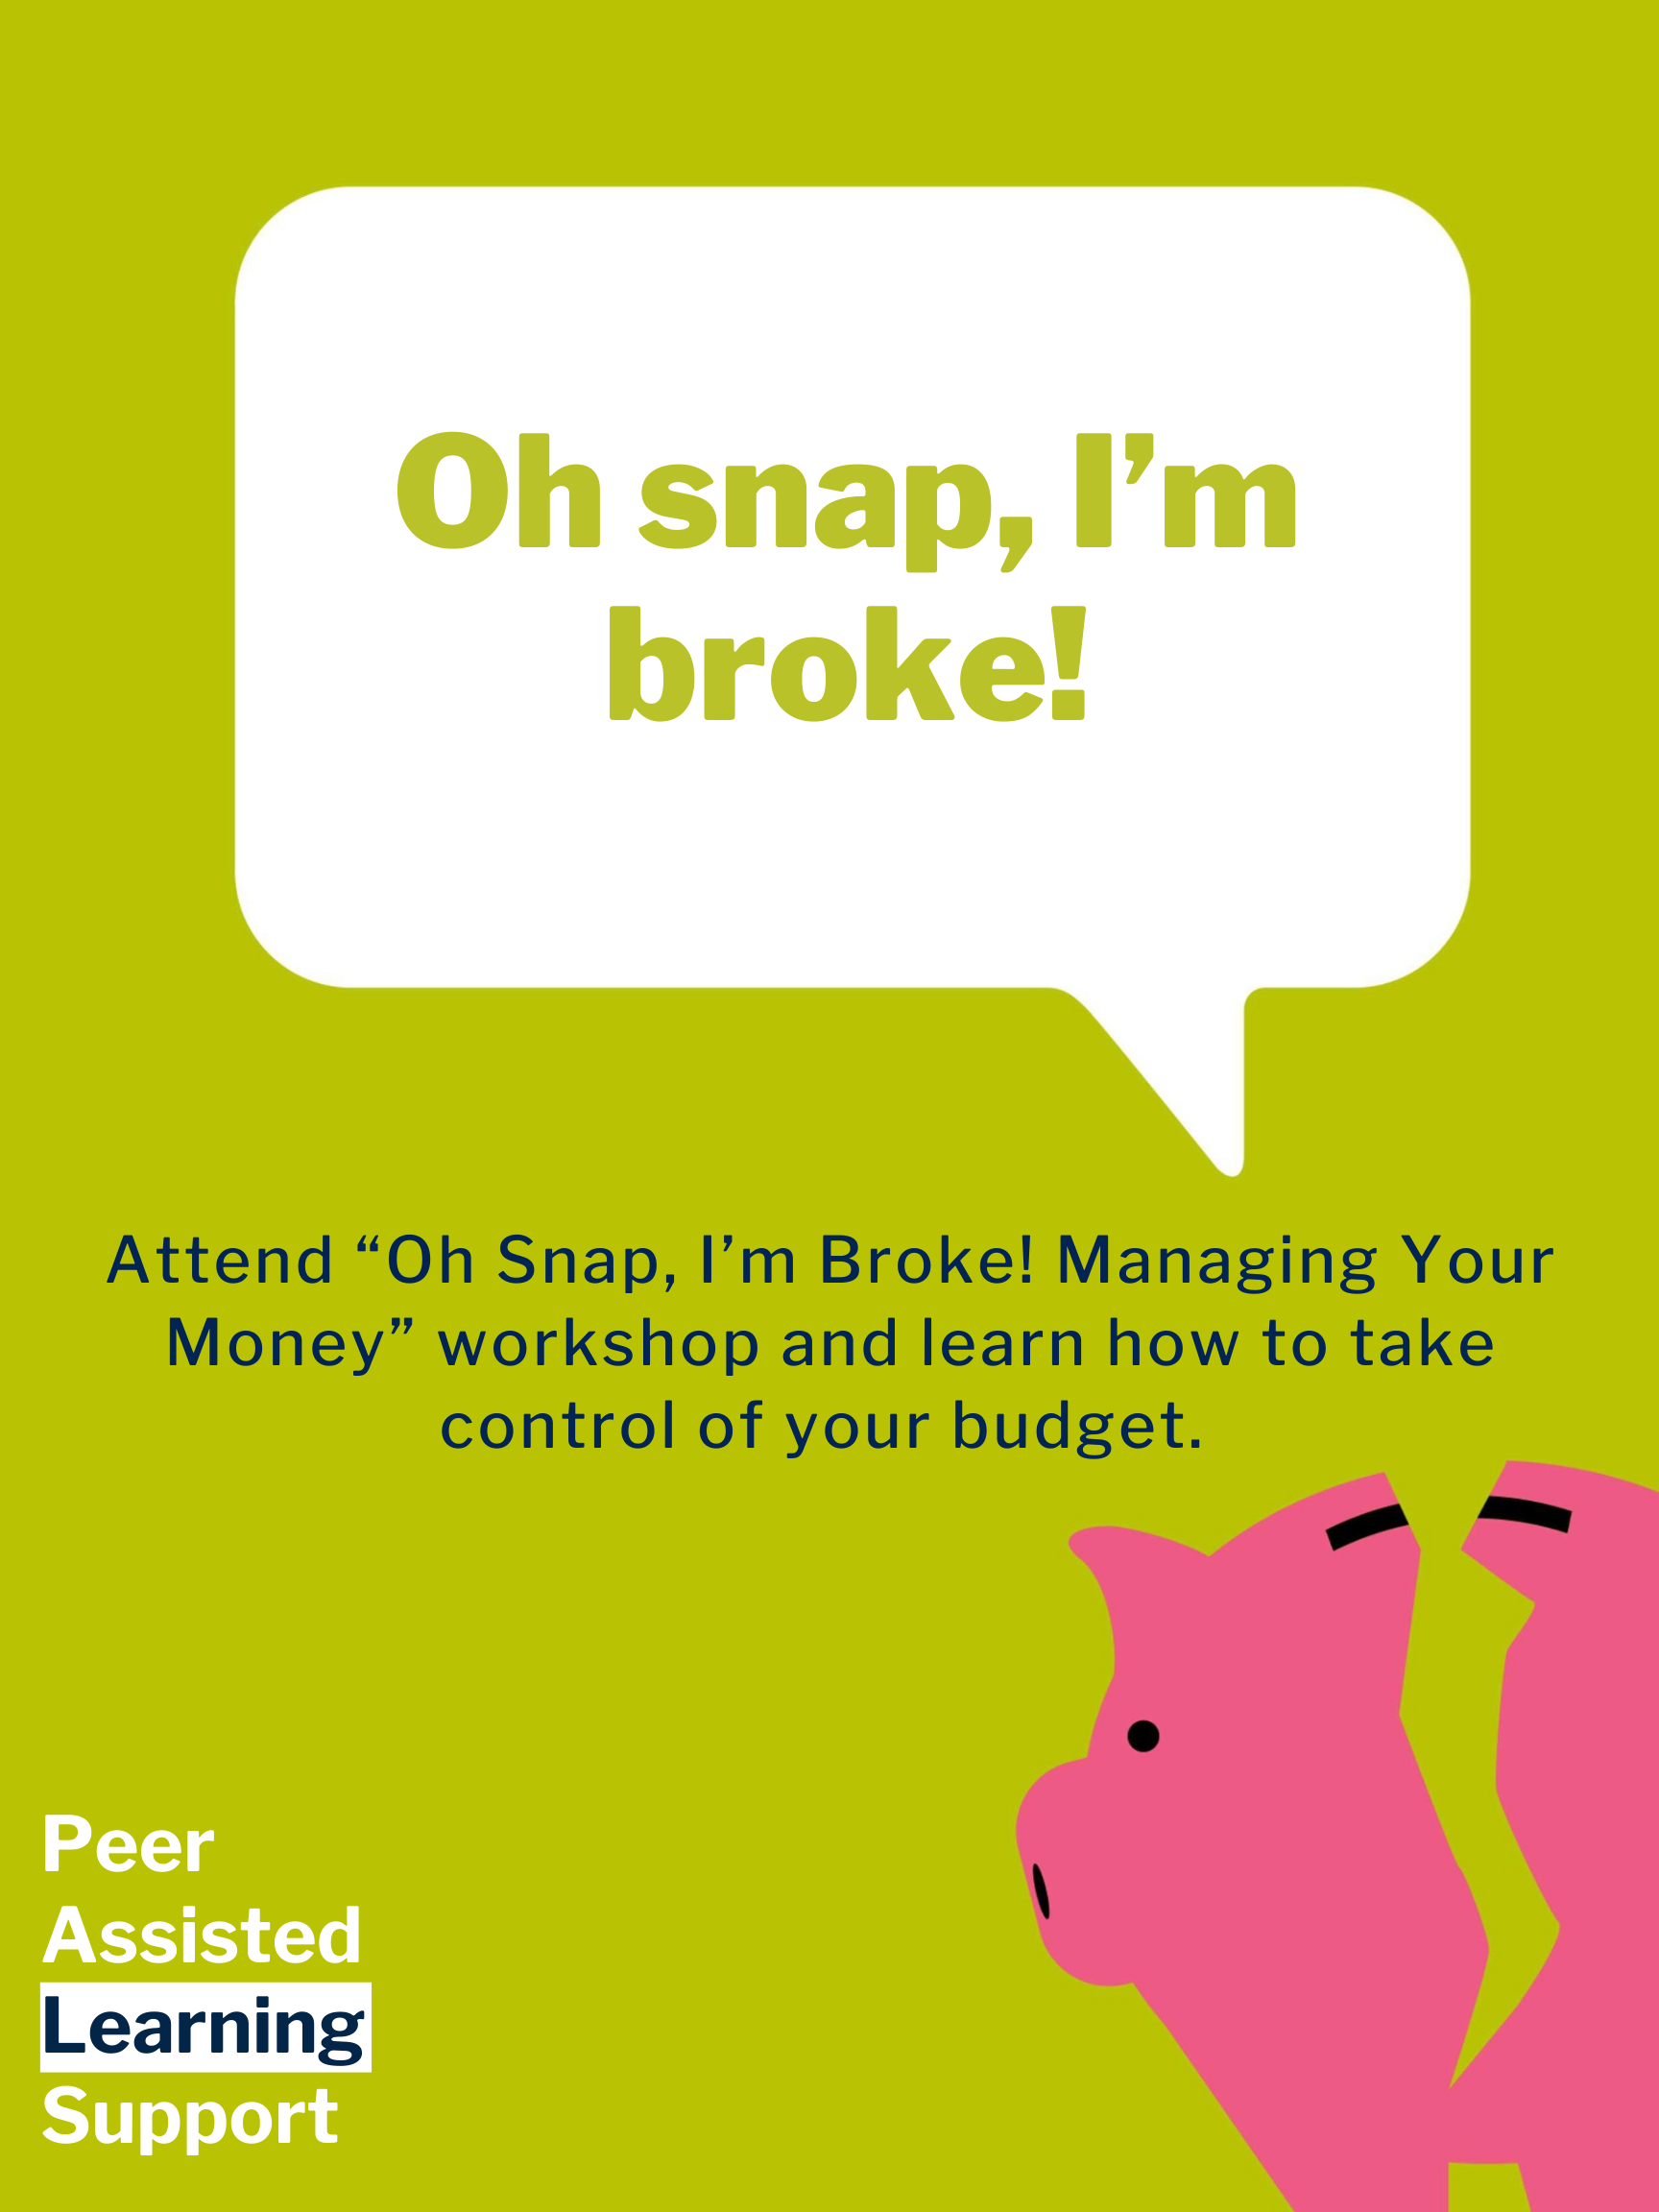 "Oh snap, I'm broke!" in a speech bubble